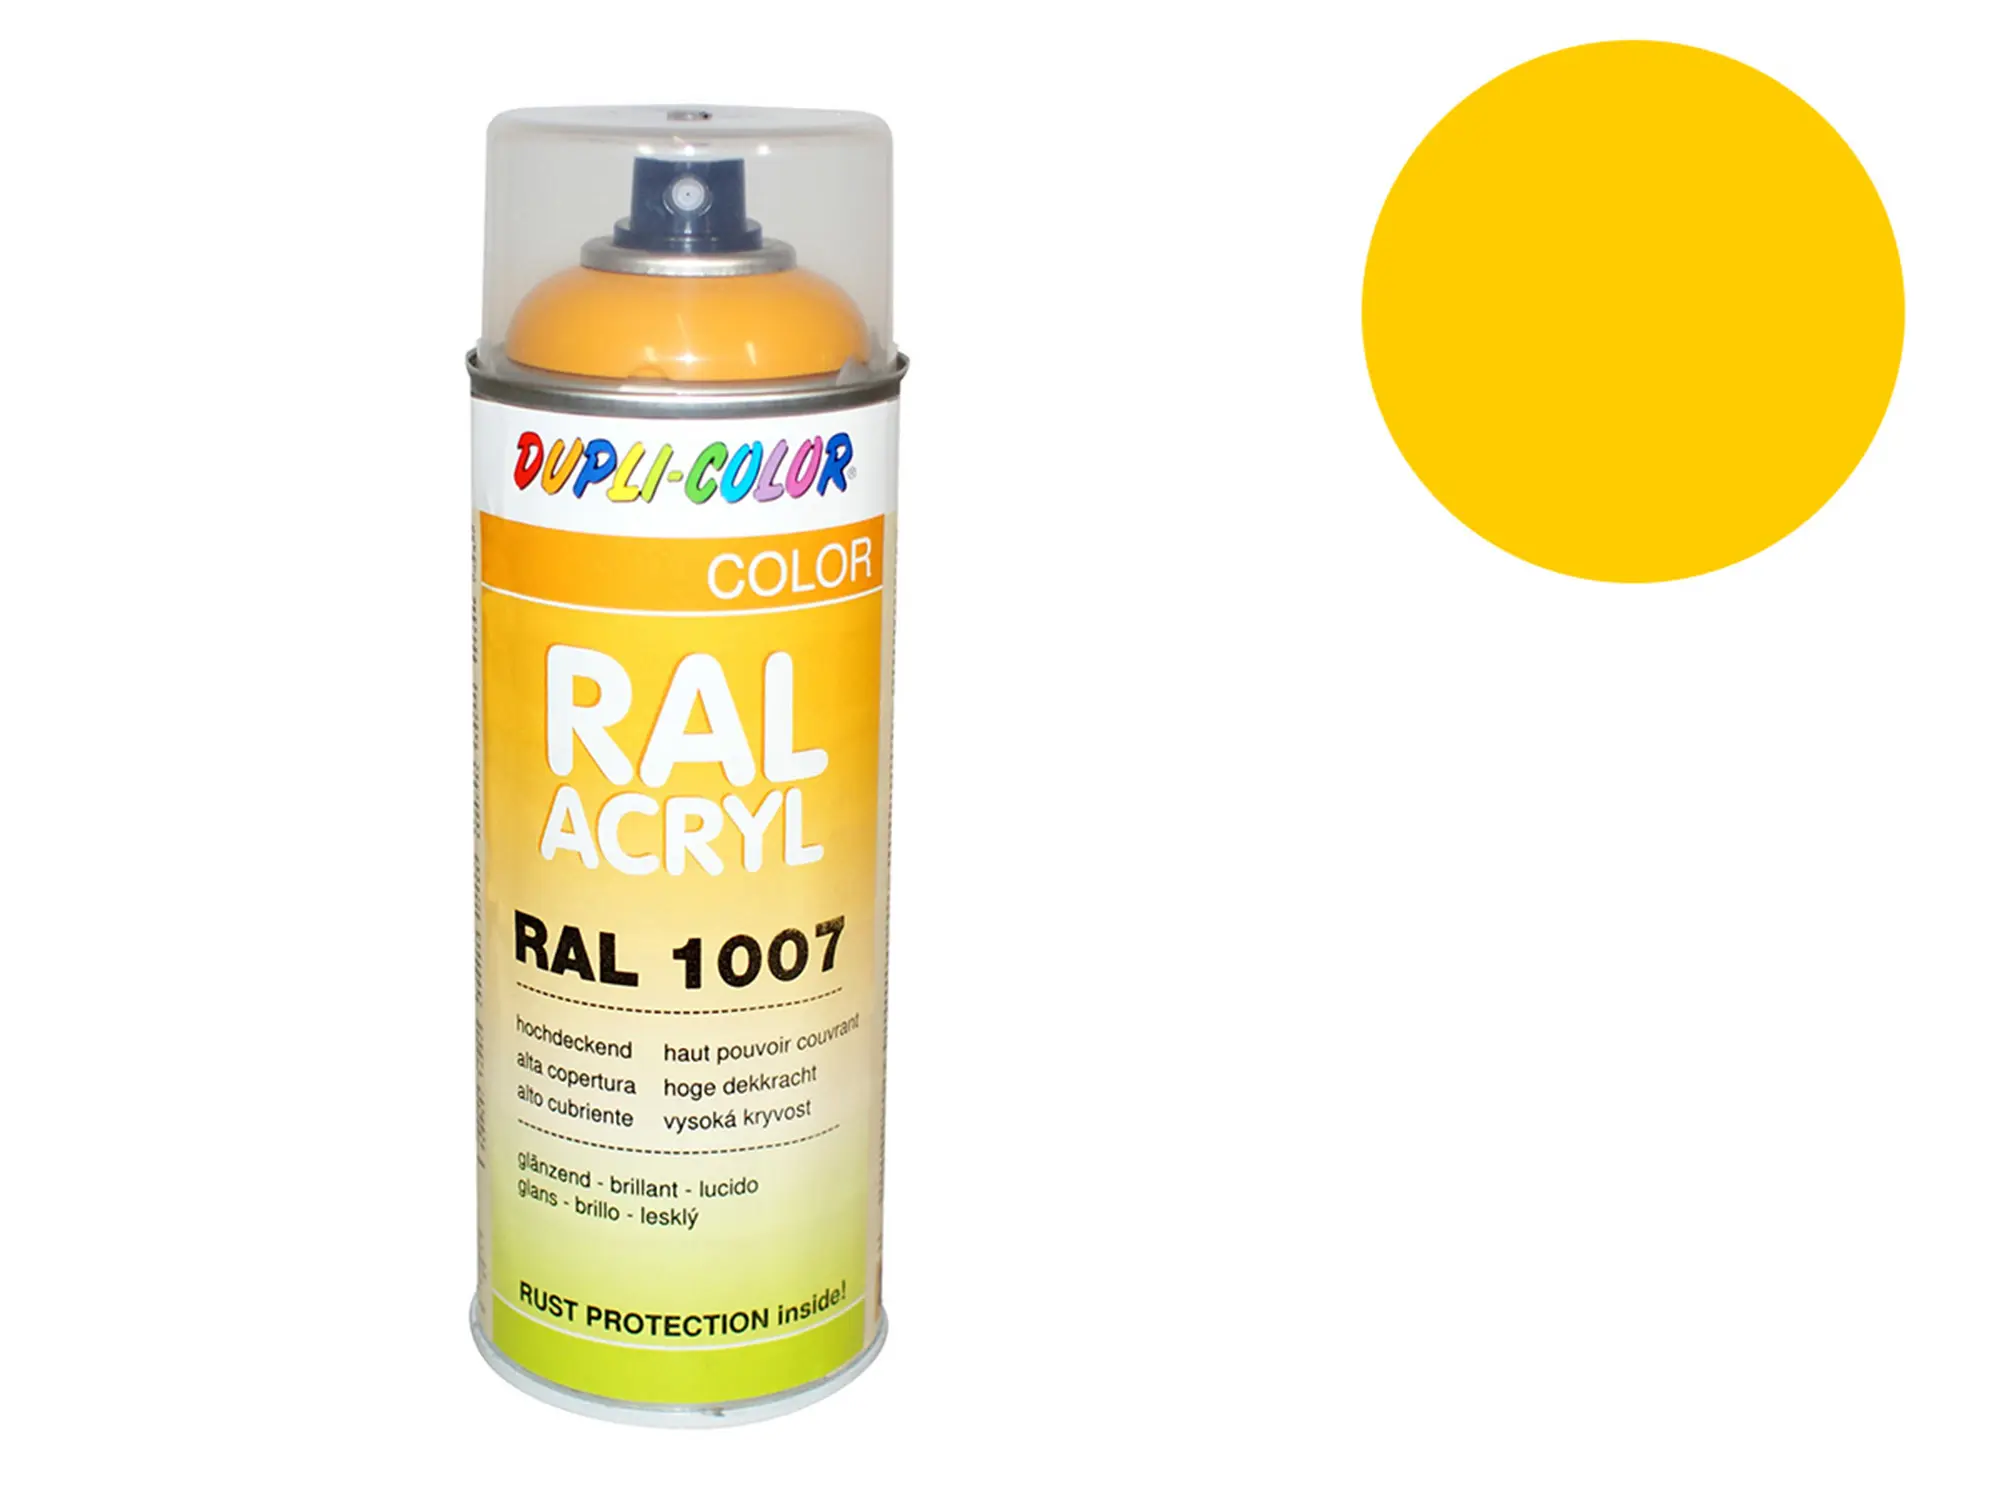 Dupli-Color Acryl-Spray RAL 1003 signalgelb, glänzend - 400 ml, Art.-Nr.: 10064735 - Bild 1